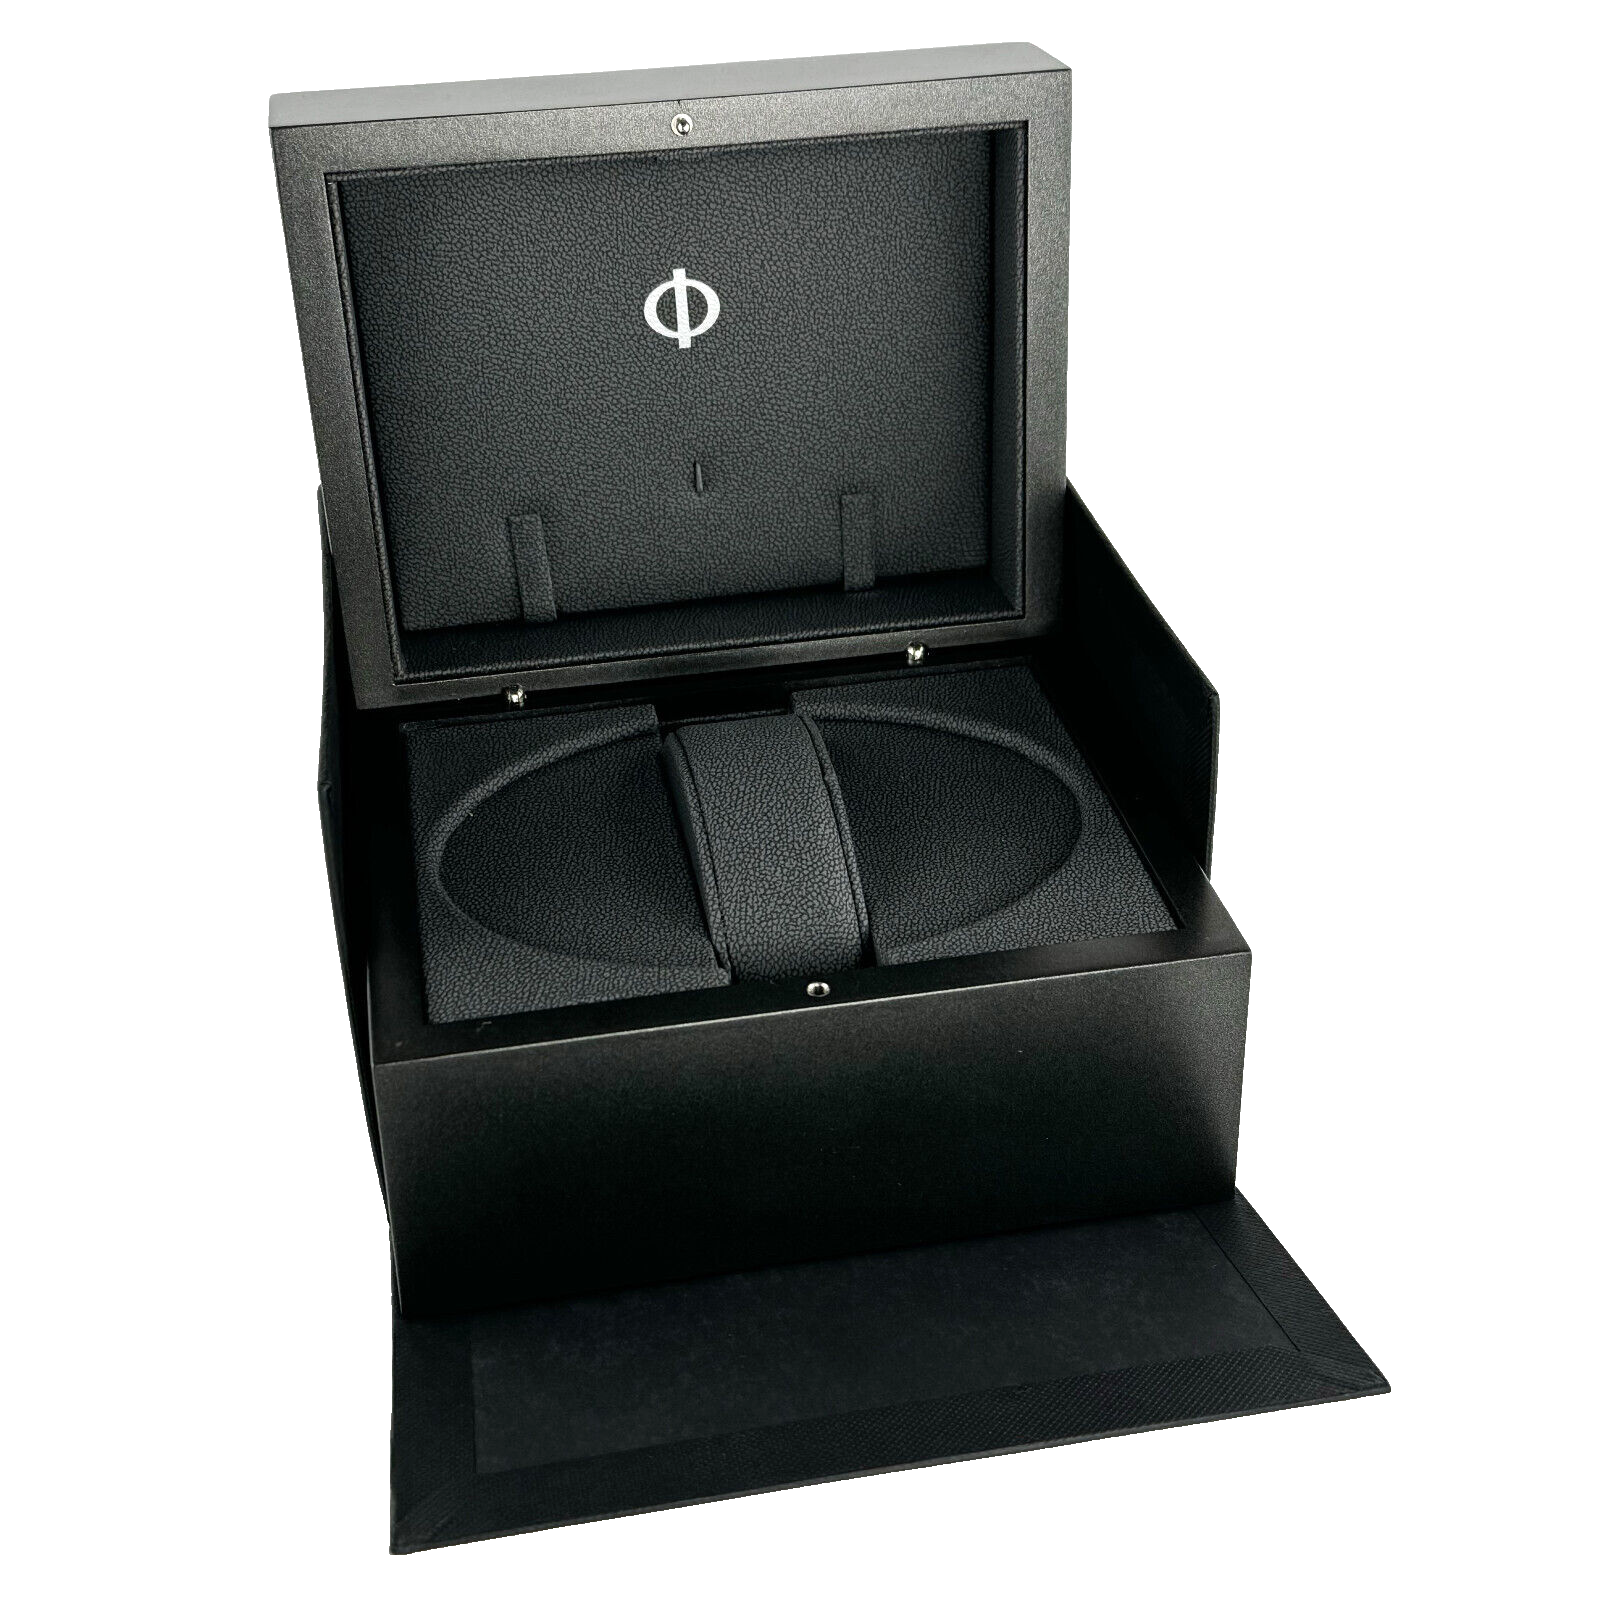 Baume & Mercier Uhrenbox Box Schwarz Black Booklet Anleitung Kunstleder Watch box